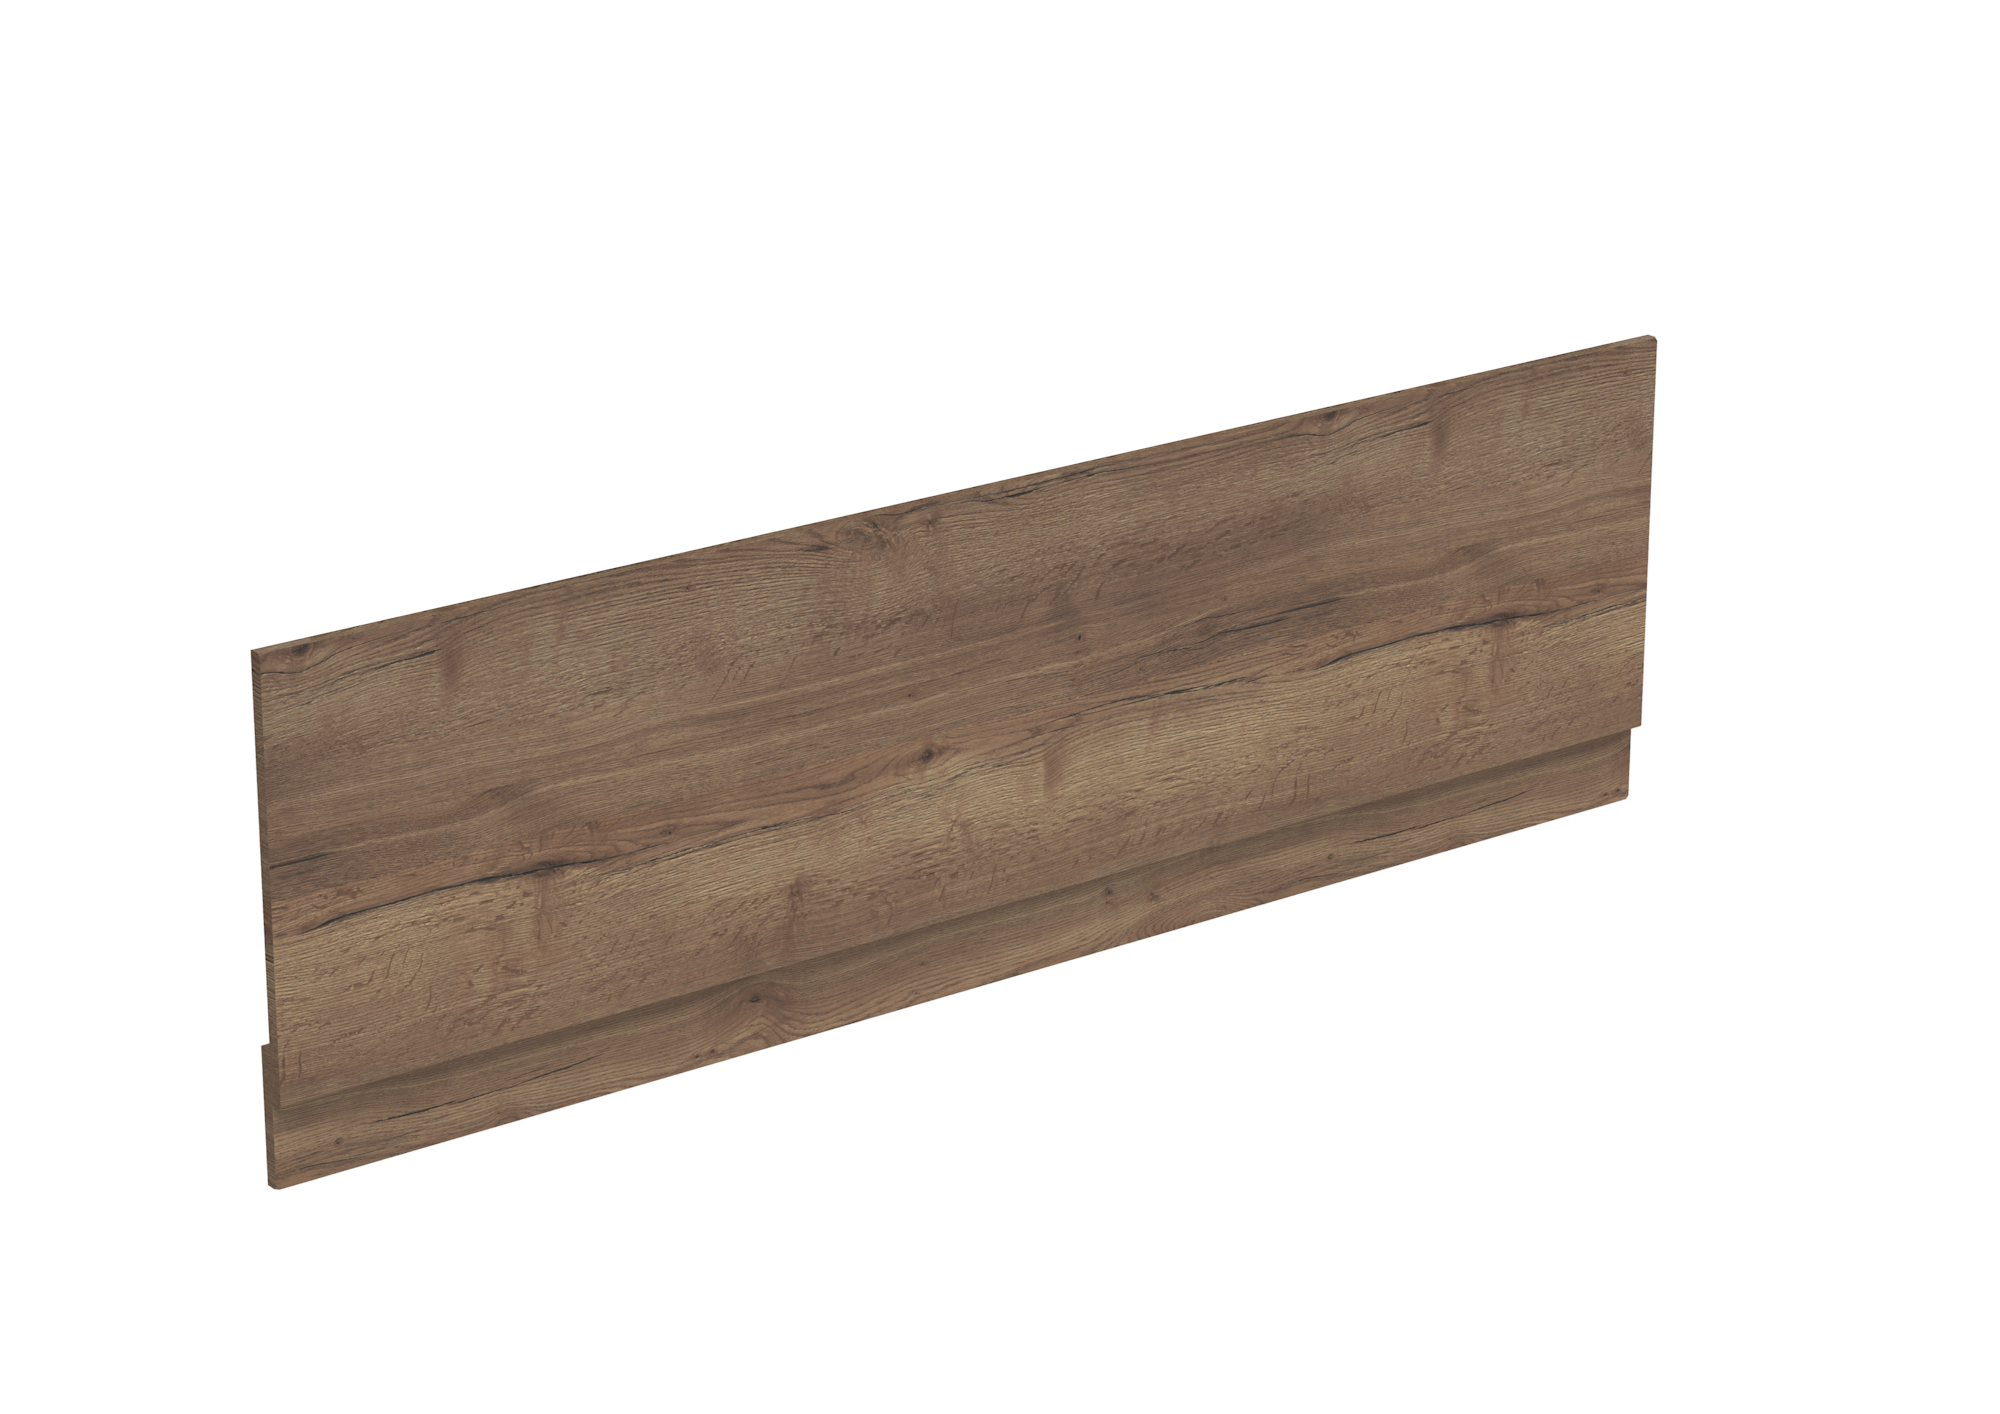 1700x450mm bath panel & plinth - English Oak